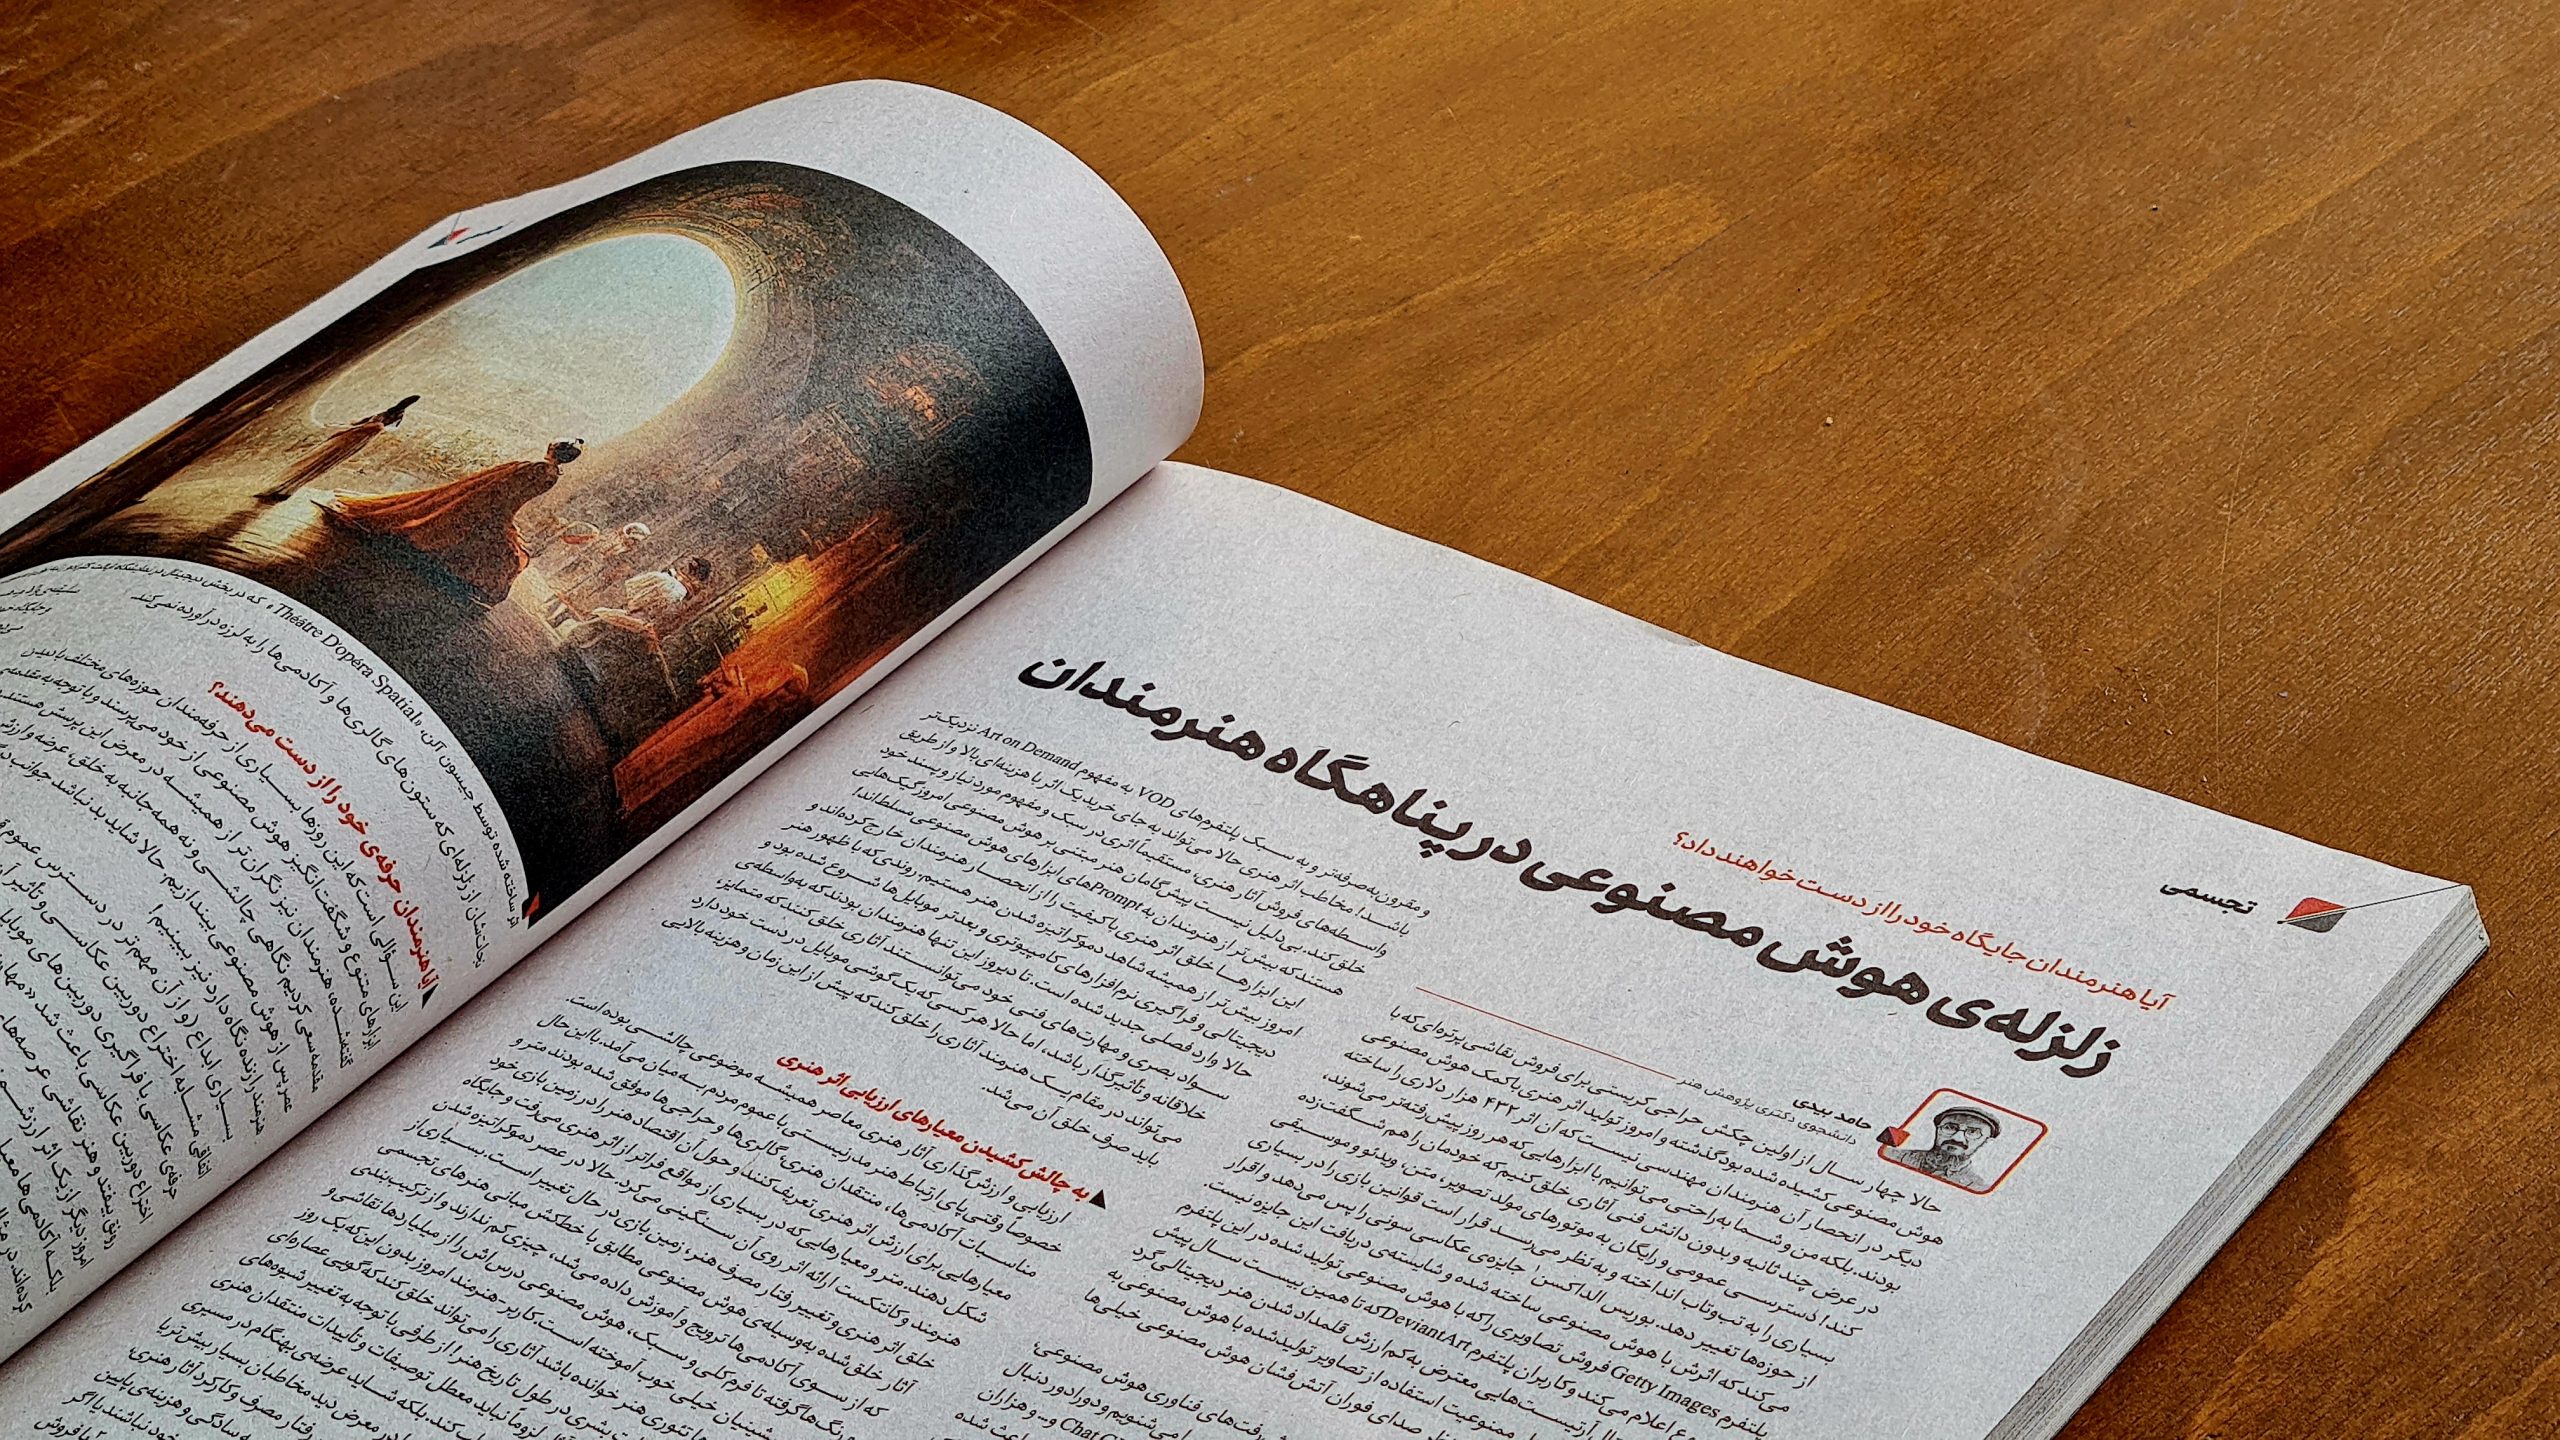 مجله تجربه - زلزله هوش مصنوعی در پناهگاه هنرمندان - حامد بیدی